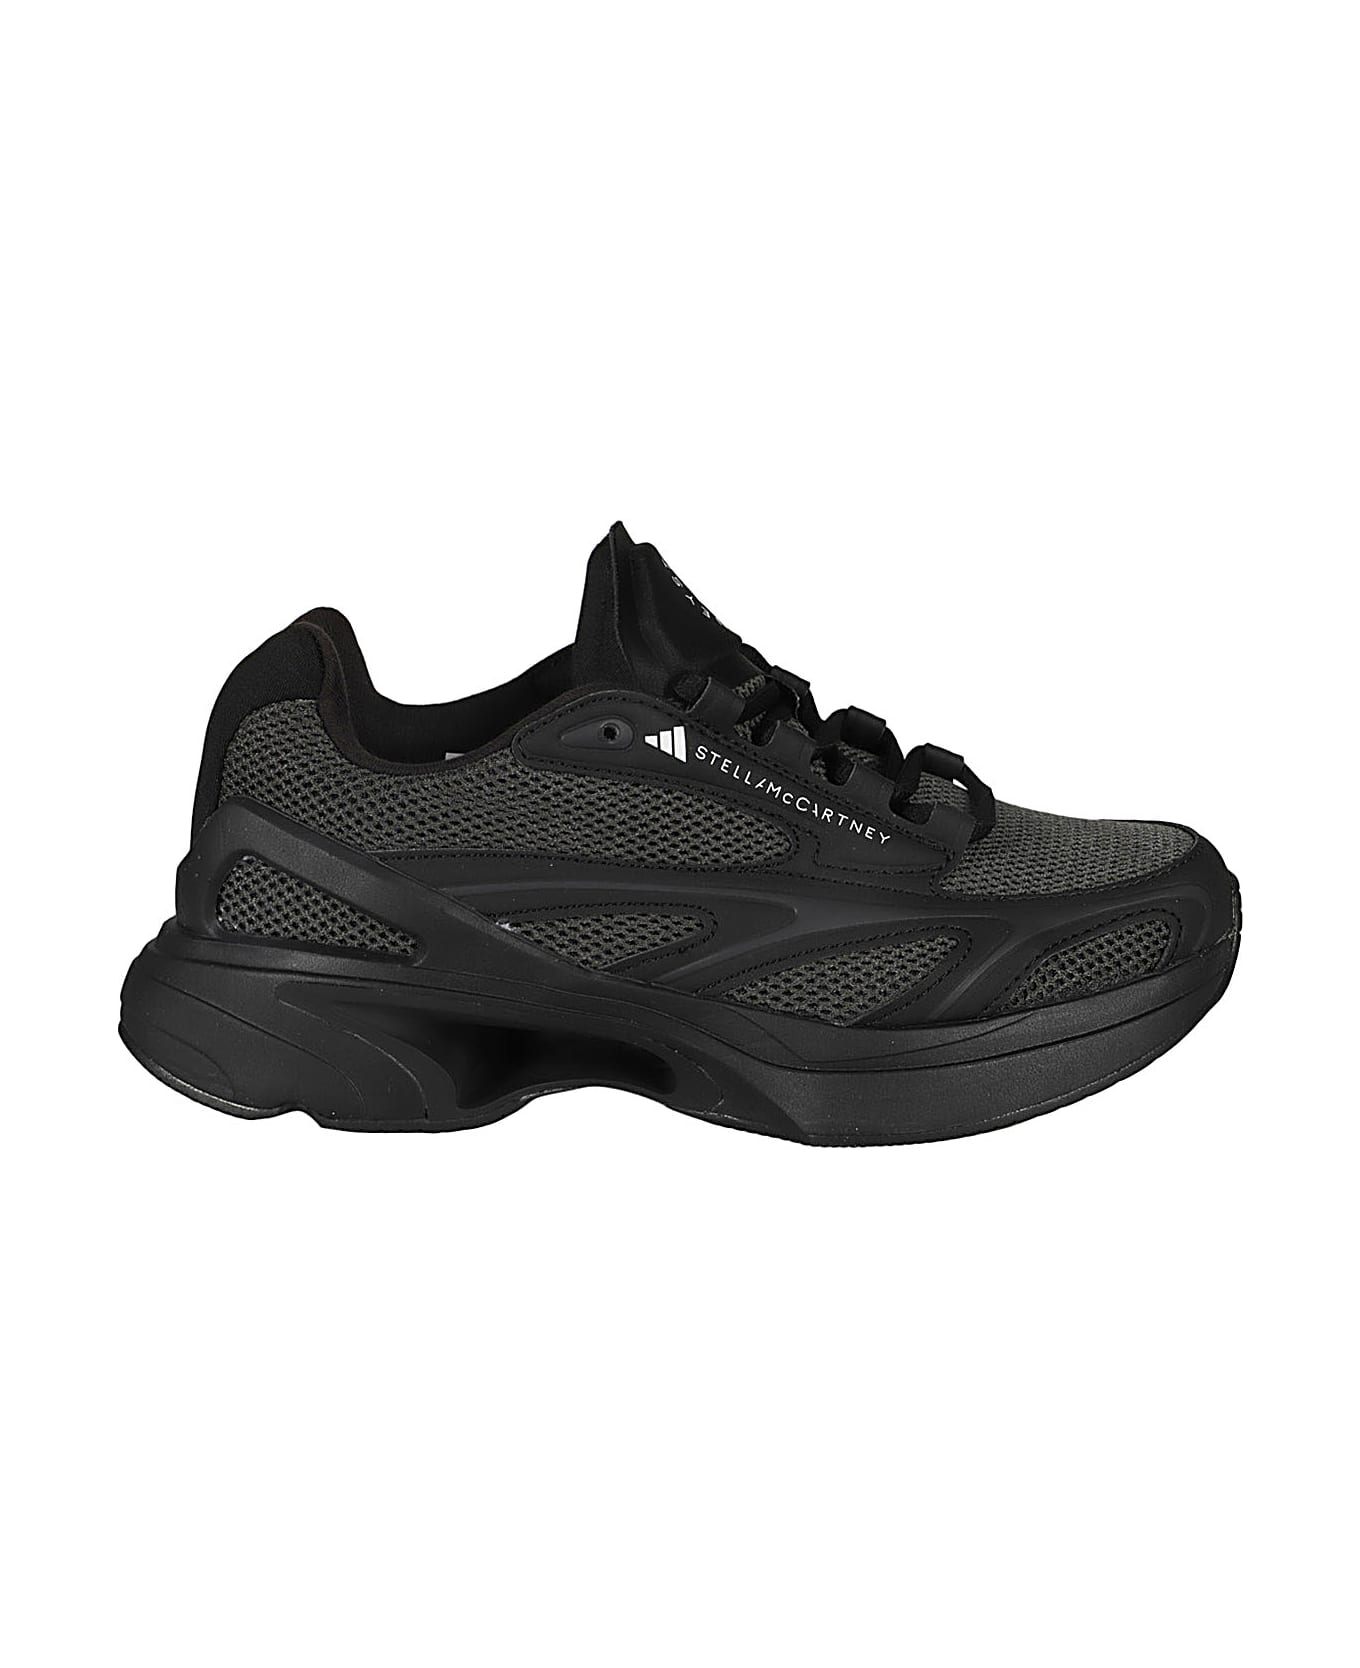 Adidas by Stella McCartney Sportswear 2000 - Black